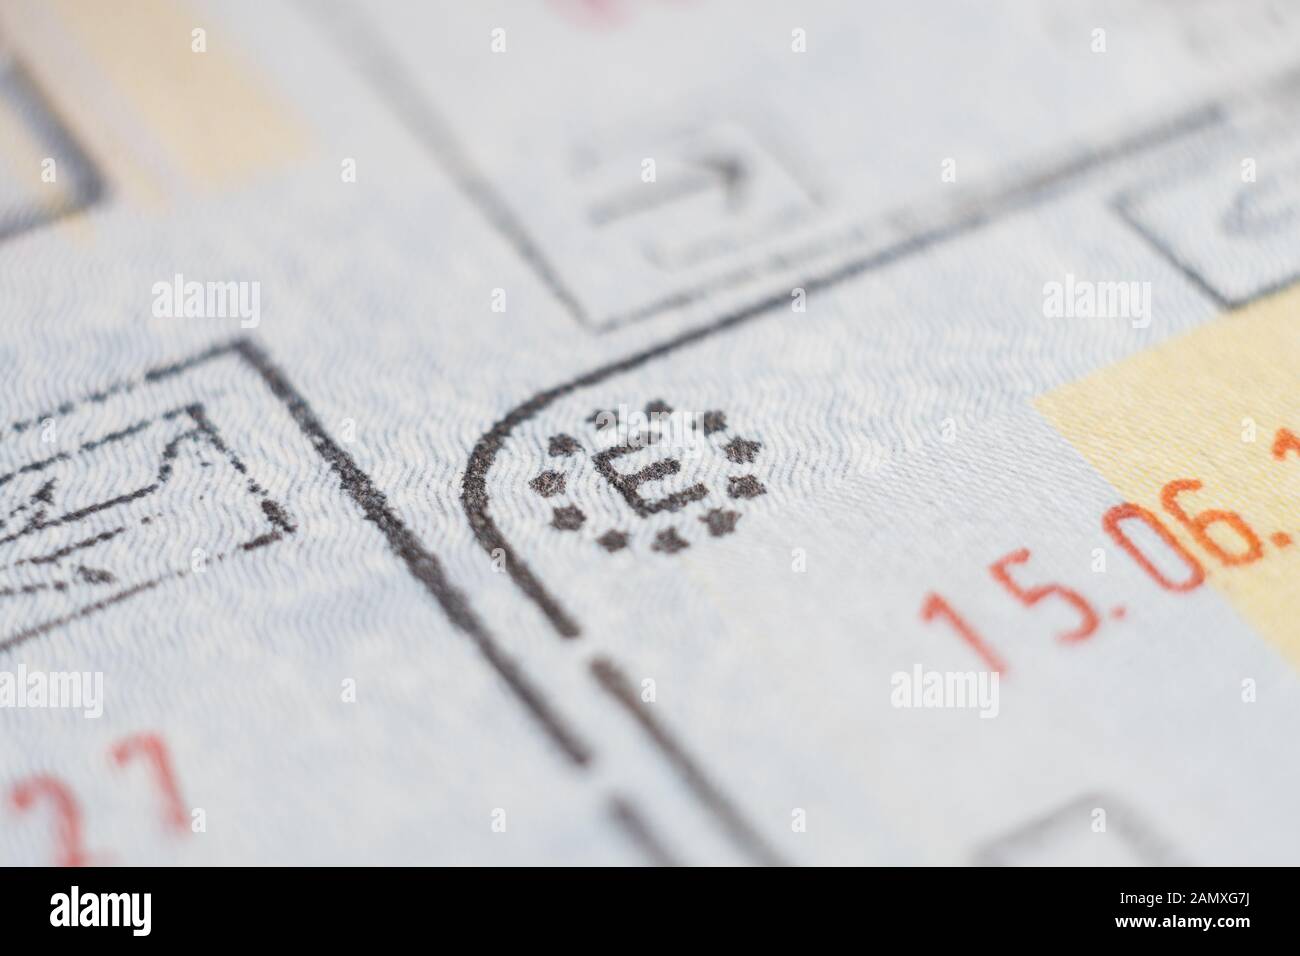 Détail macro Close-up de contrôle aux frontières de l'Union européenne admission douanière stamp with airplane symbole dans l'accent et de l'Espagne pays signer Banque D'Images